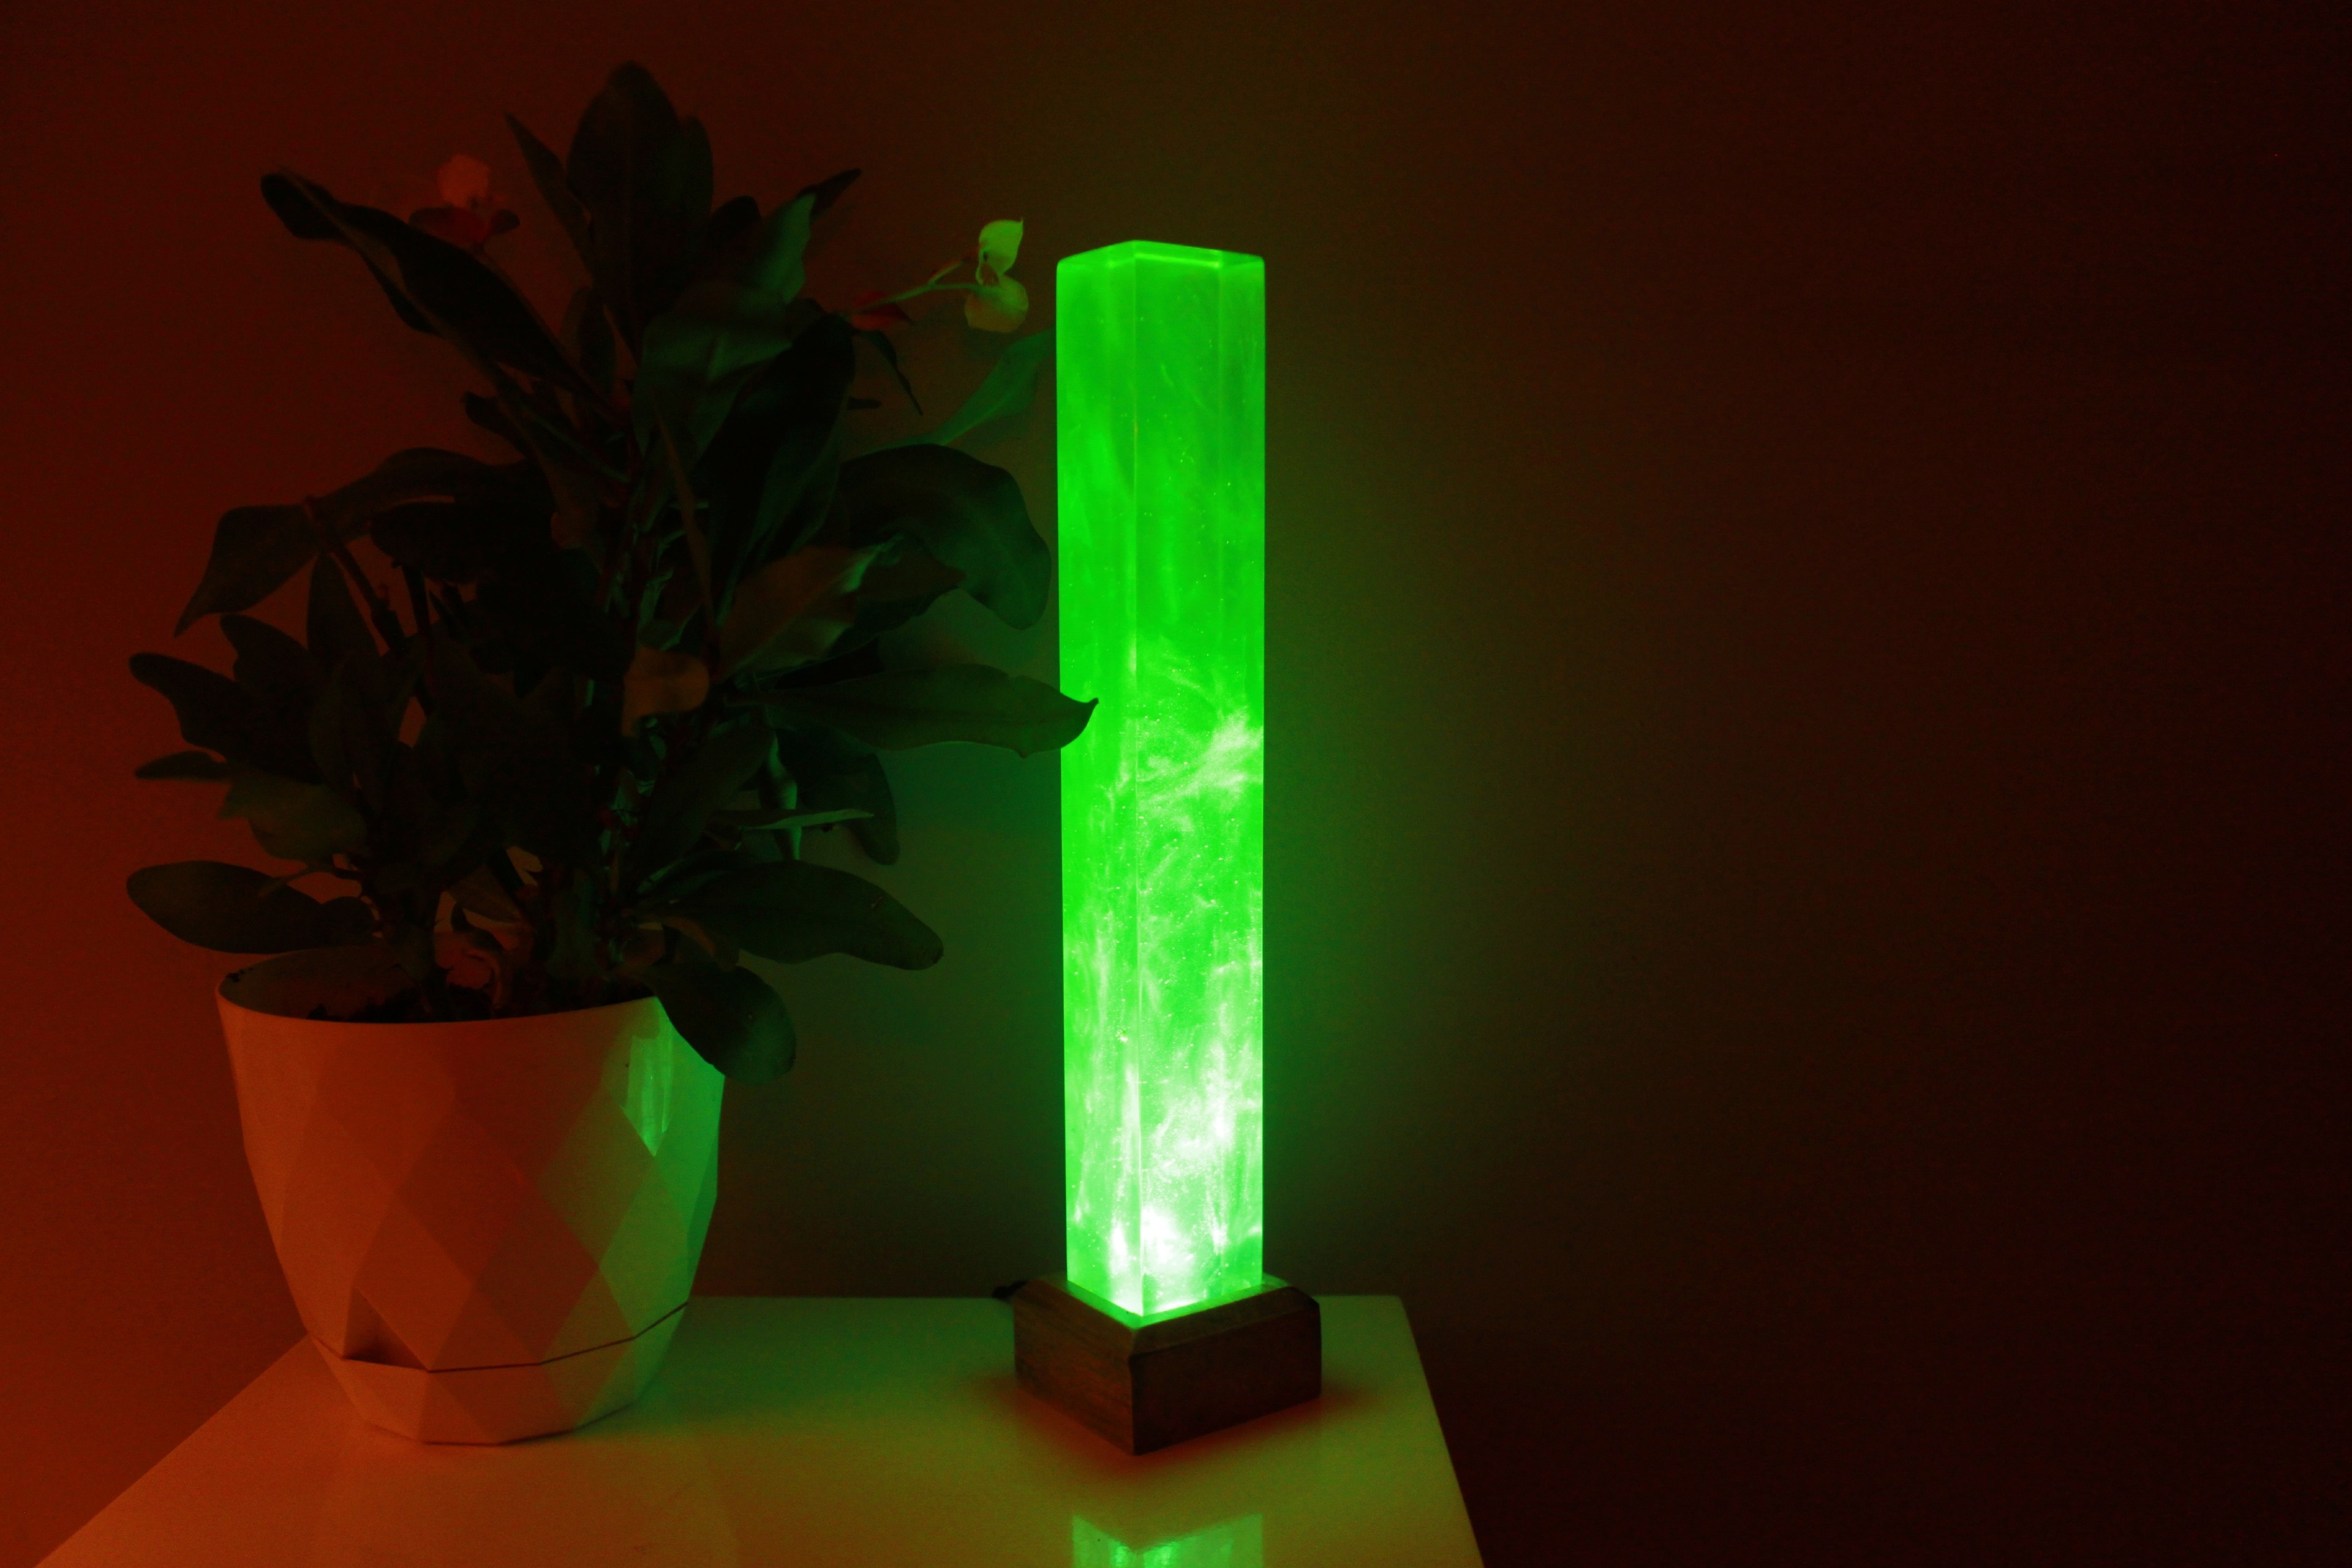 Lámpara de ambiente de resina epoxi sólida de color verde intenso